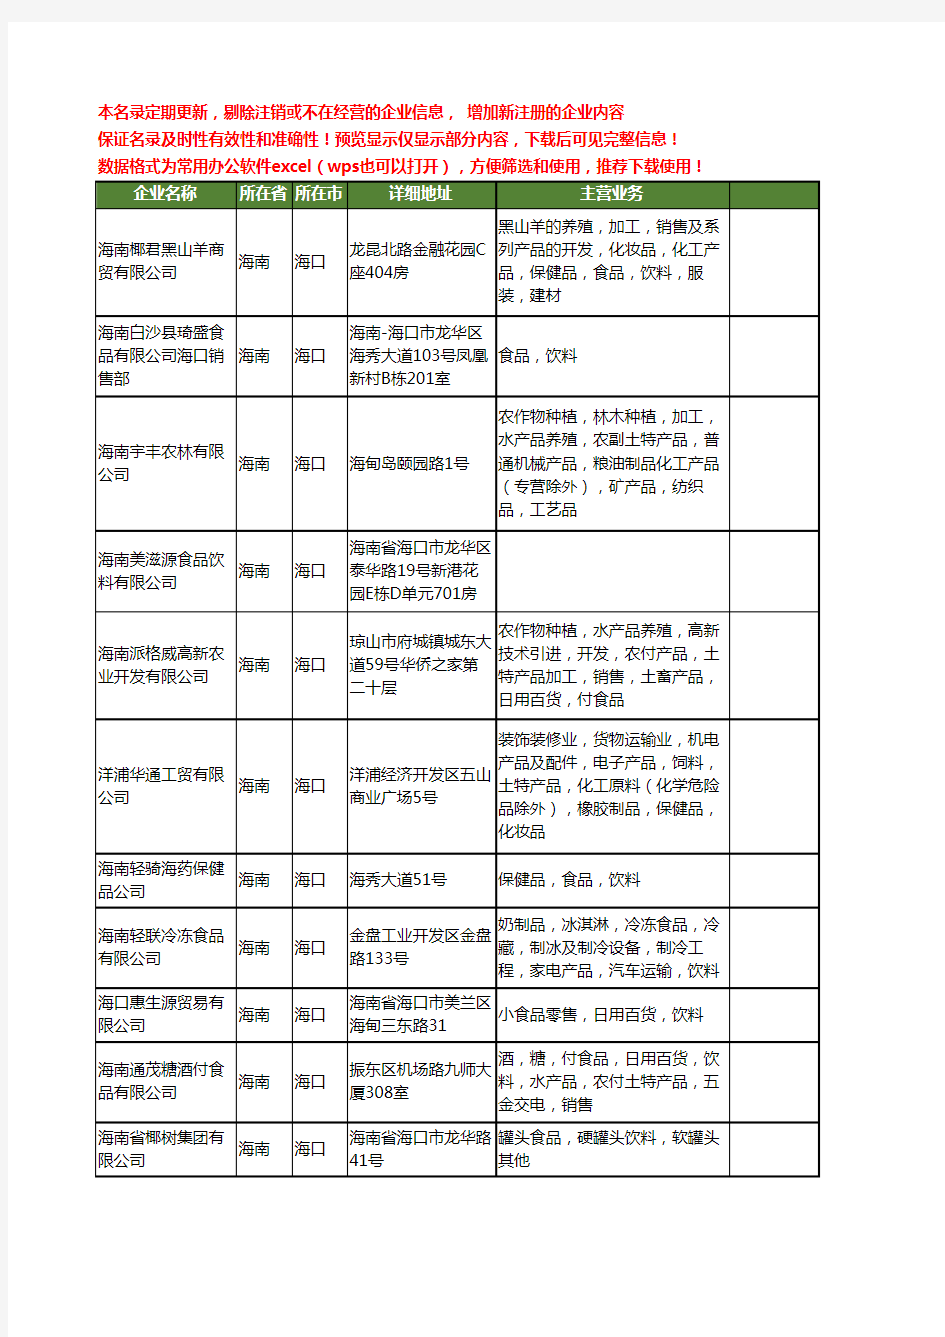 新版海南省饮料食品工商企业公司商家名录名单联系方式大全493家